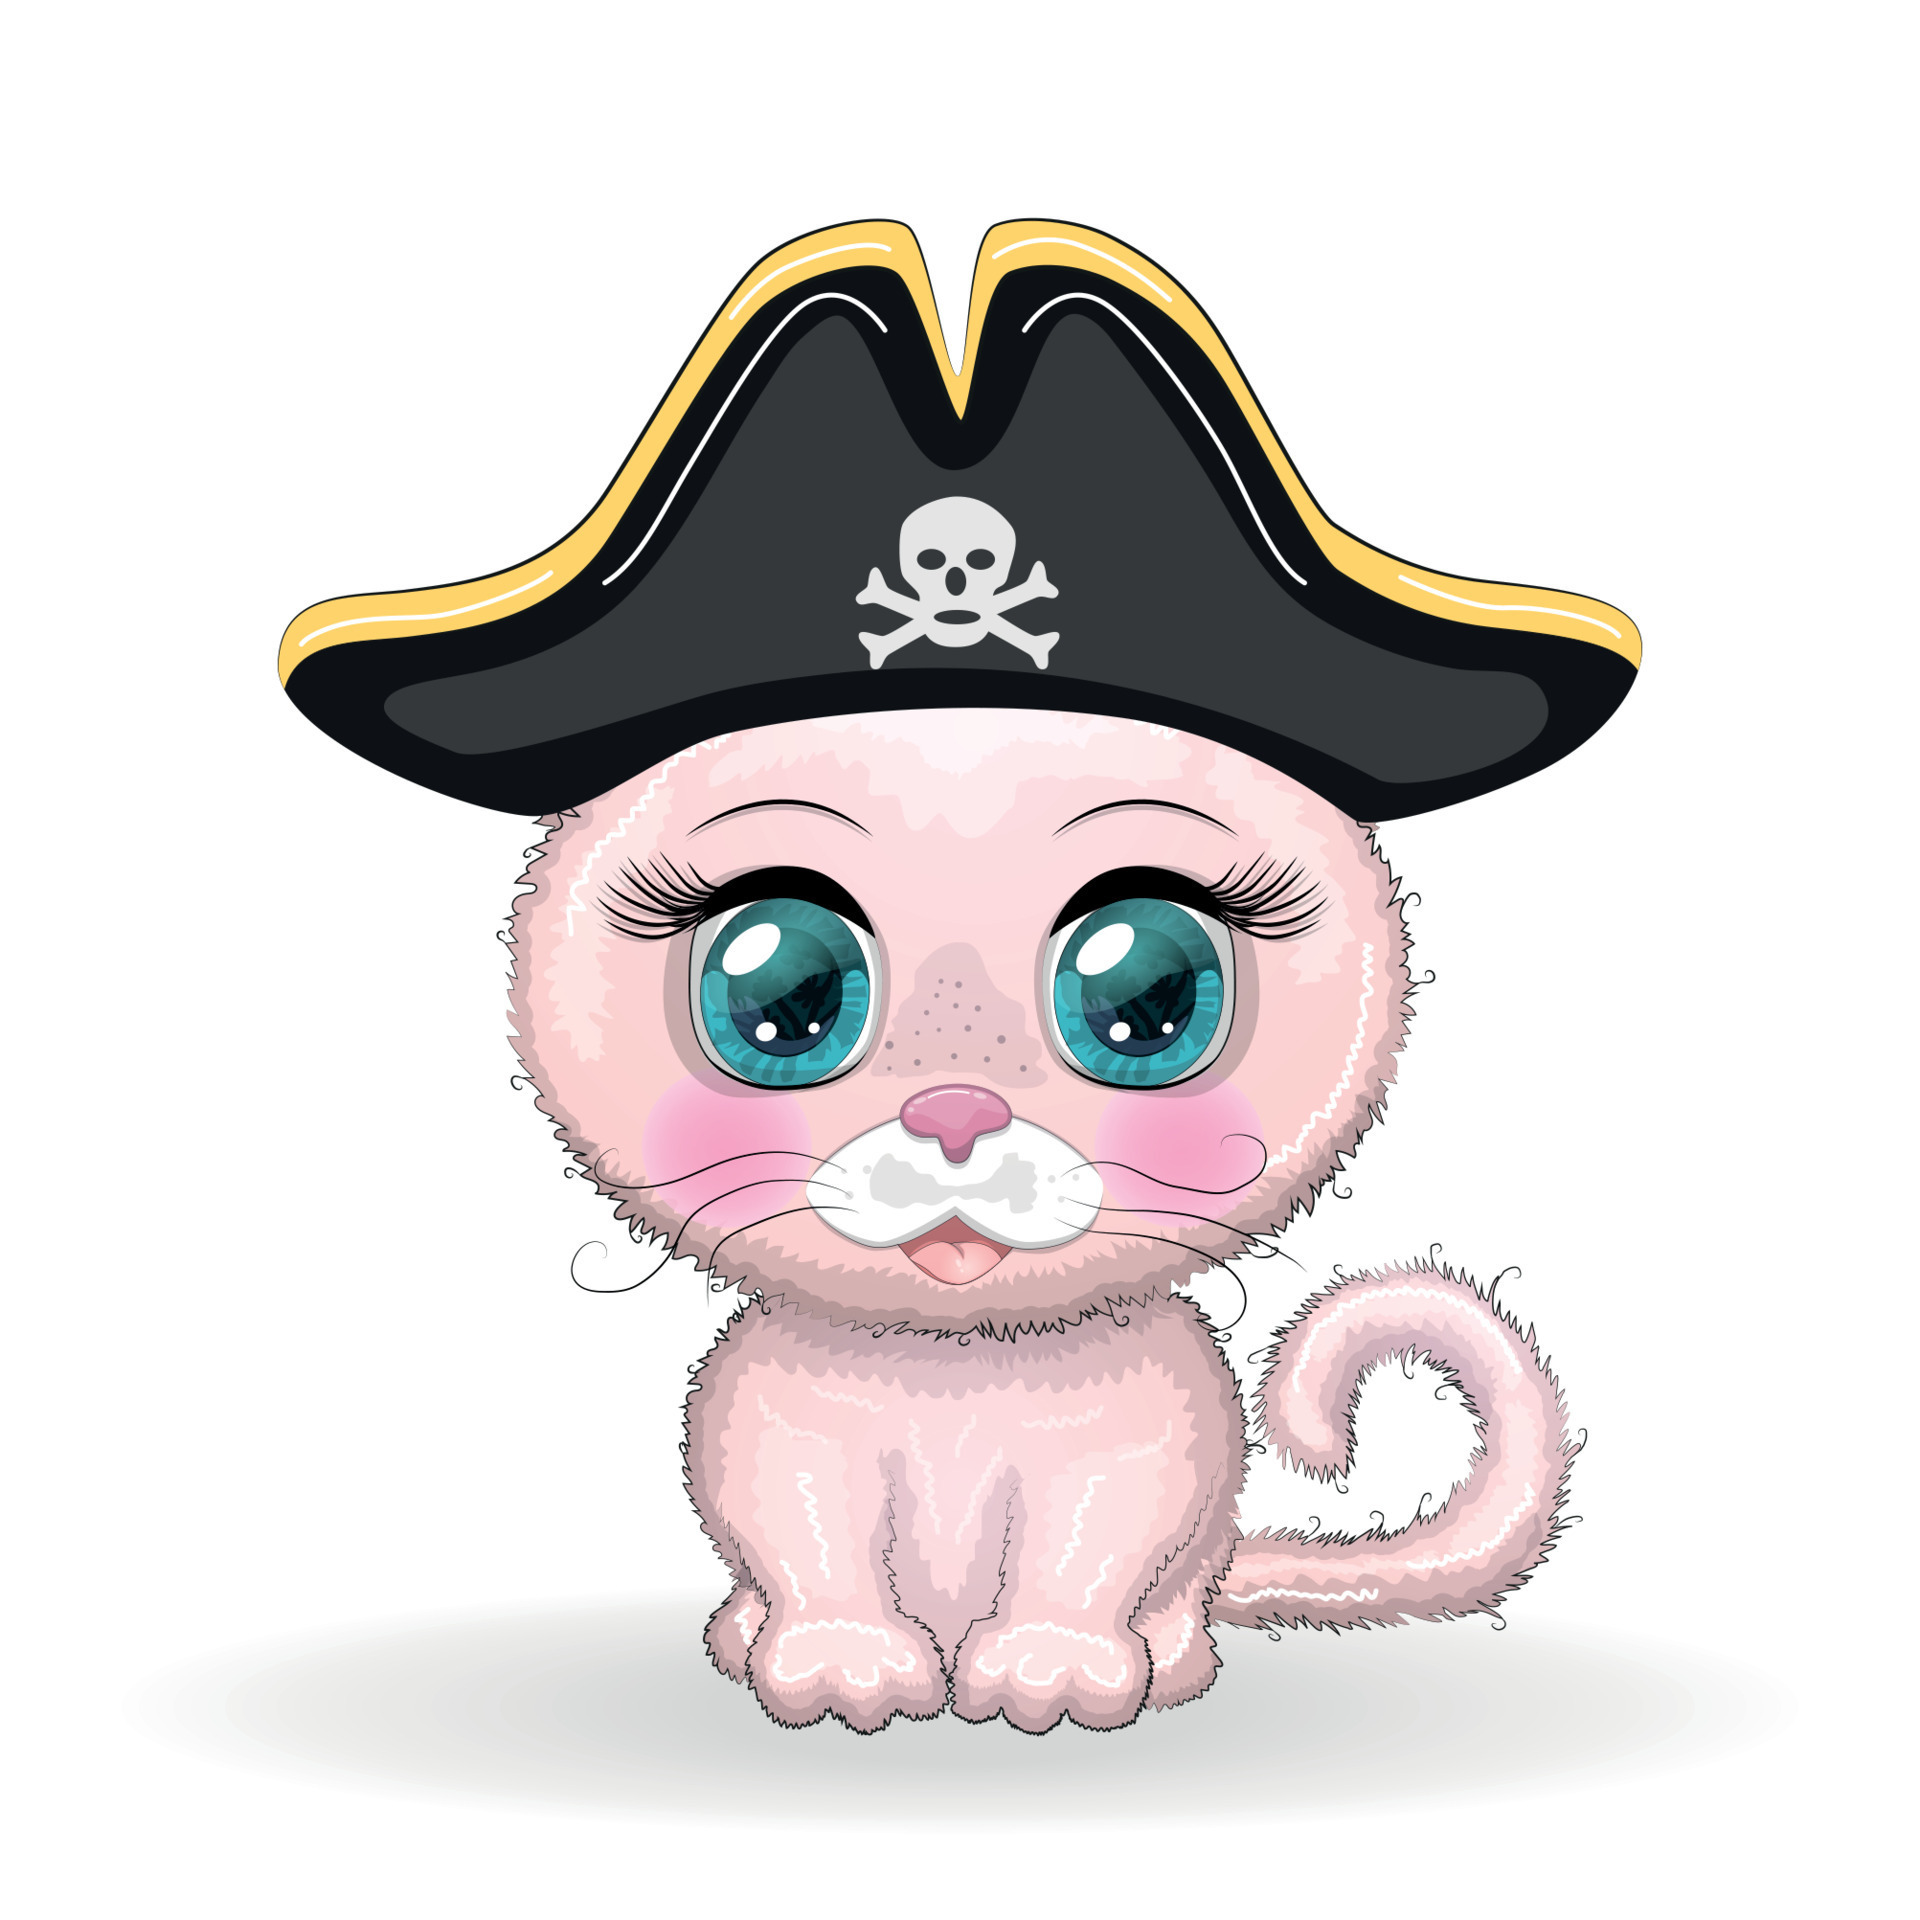 gato pirata, personagem de desenho animado do jogo, gato animal selvagem em  uma bandana e um chapéu armado com uma caveira, com um tapa-olho. 25477170  Vetor no Vecteezy